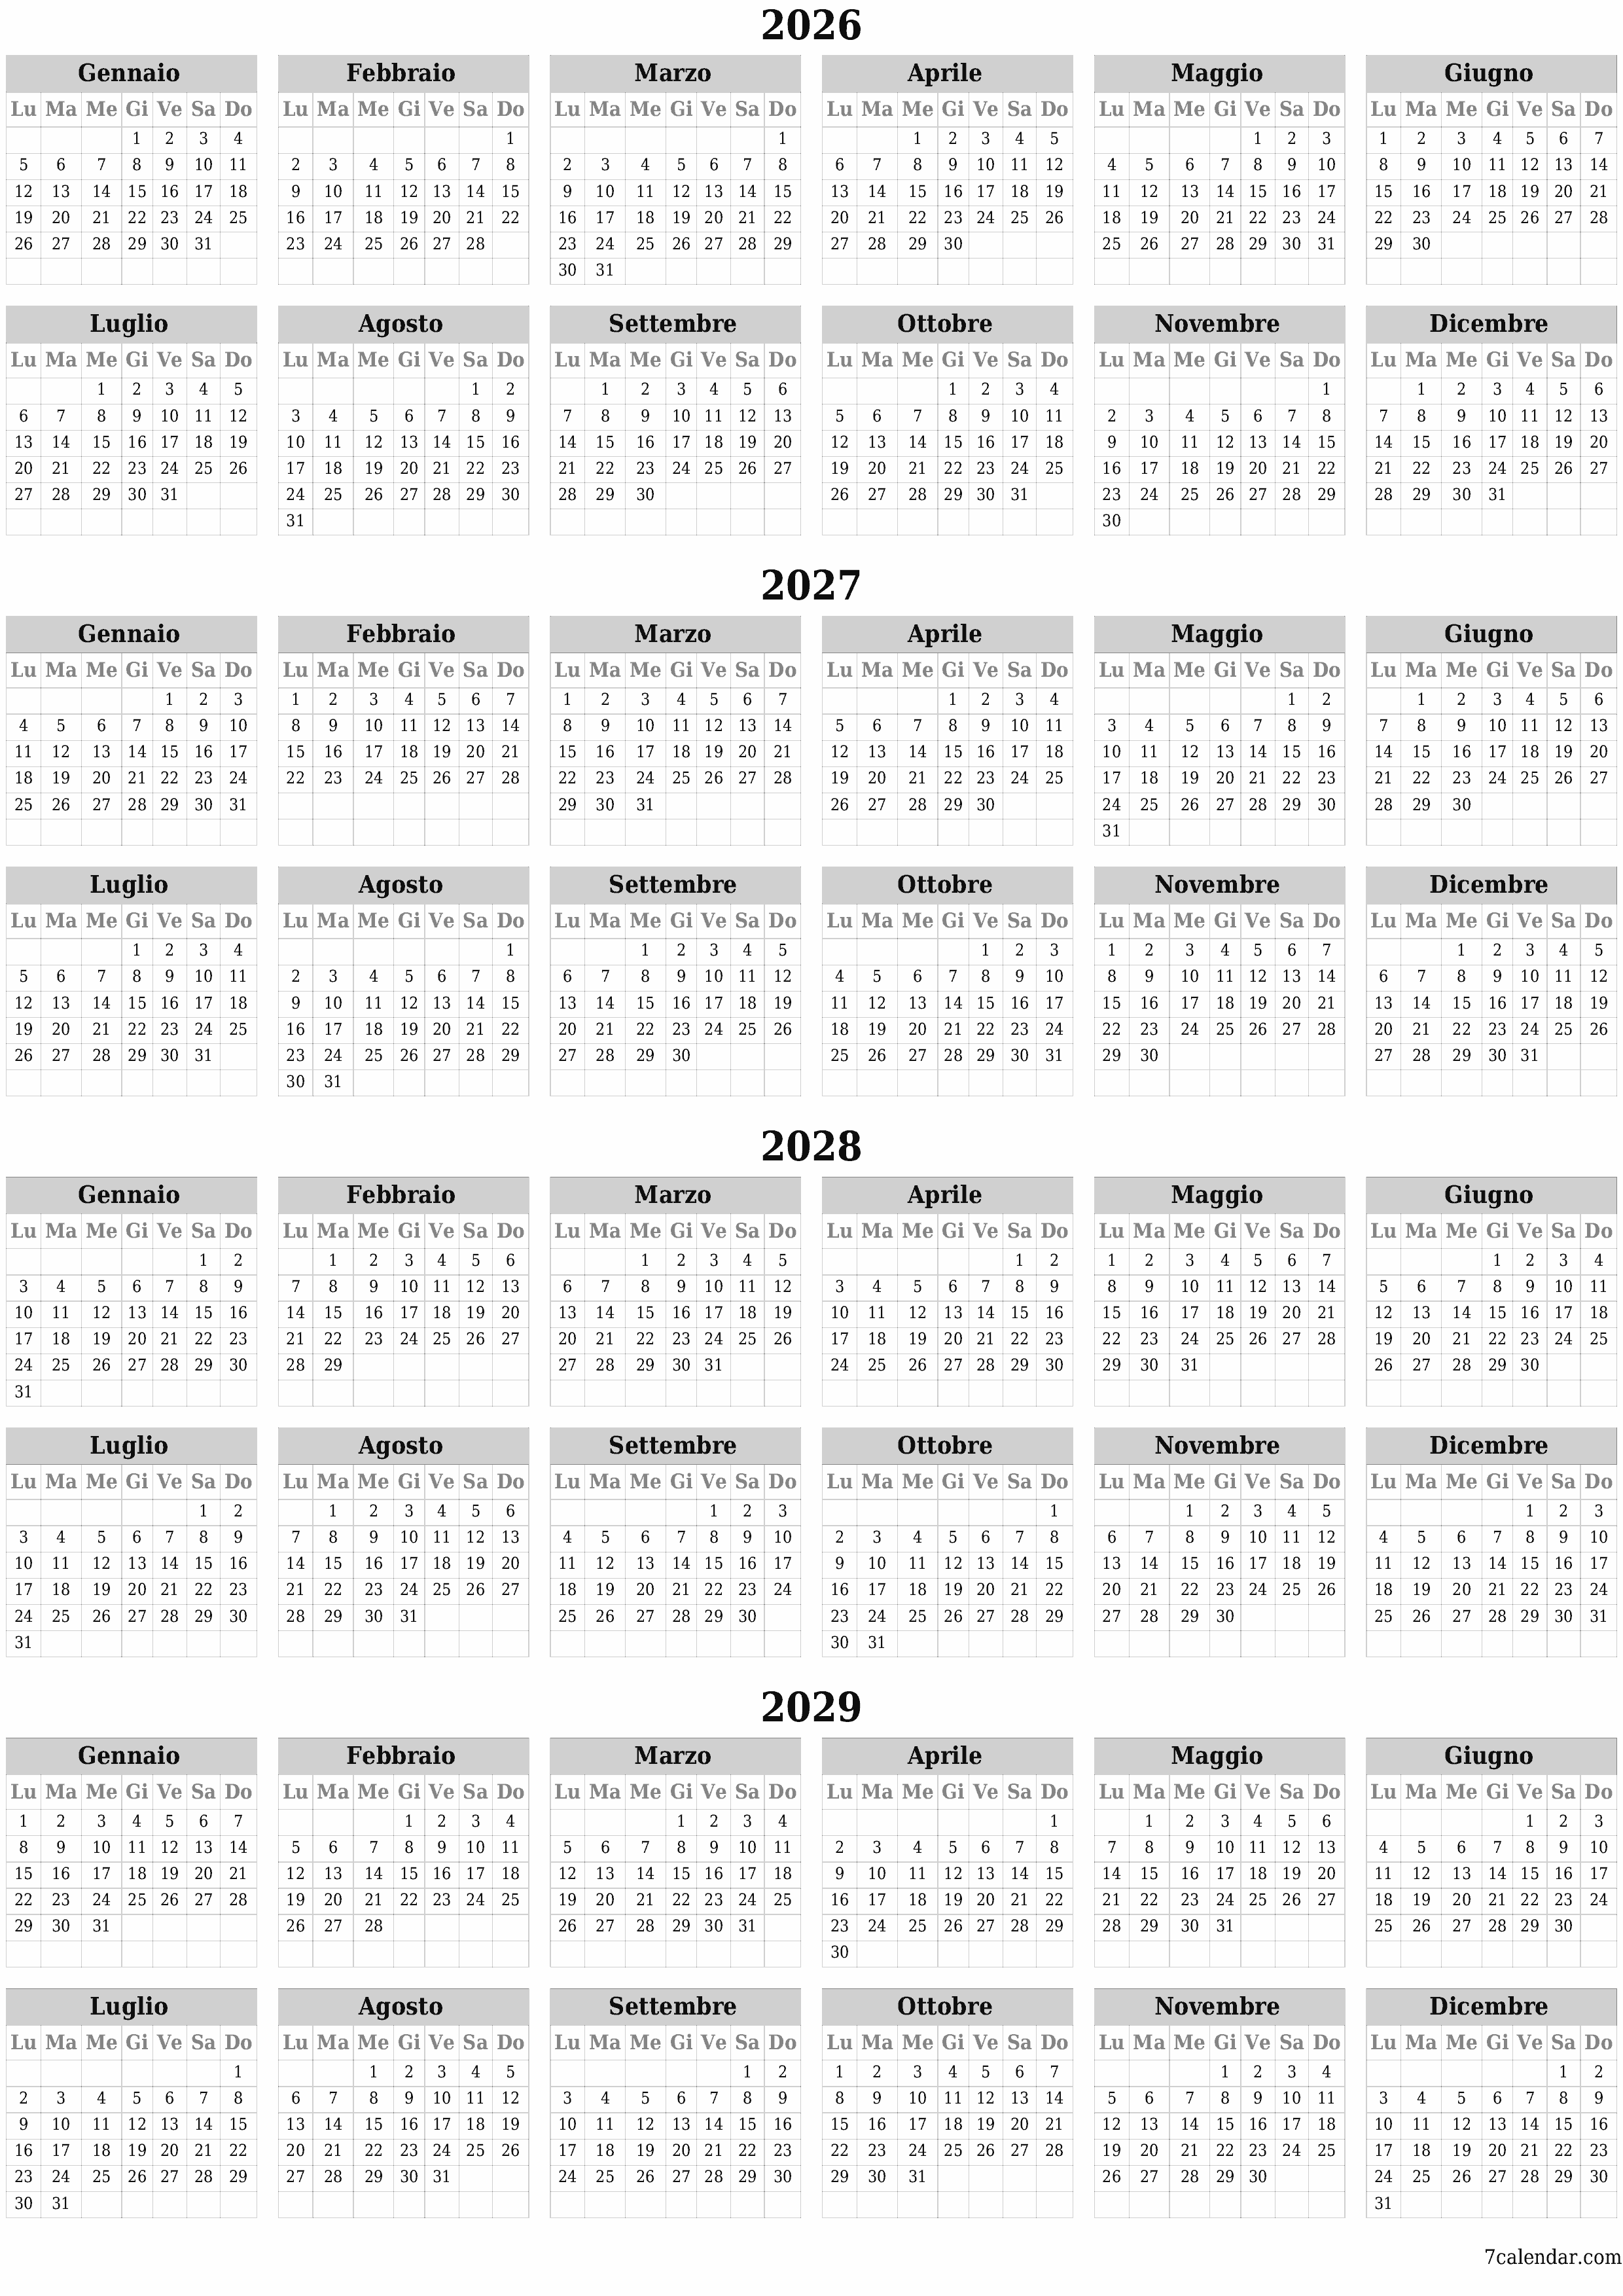  stampabile da parete modello di gratuitoverticale Annuale calendario Giugno (Giu) 2026